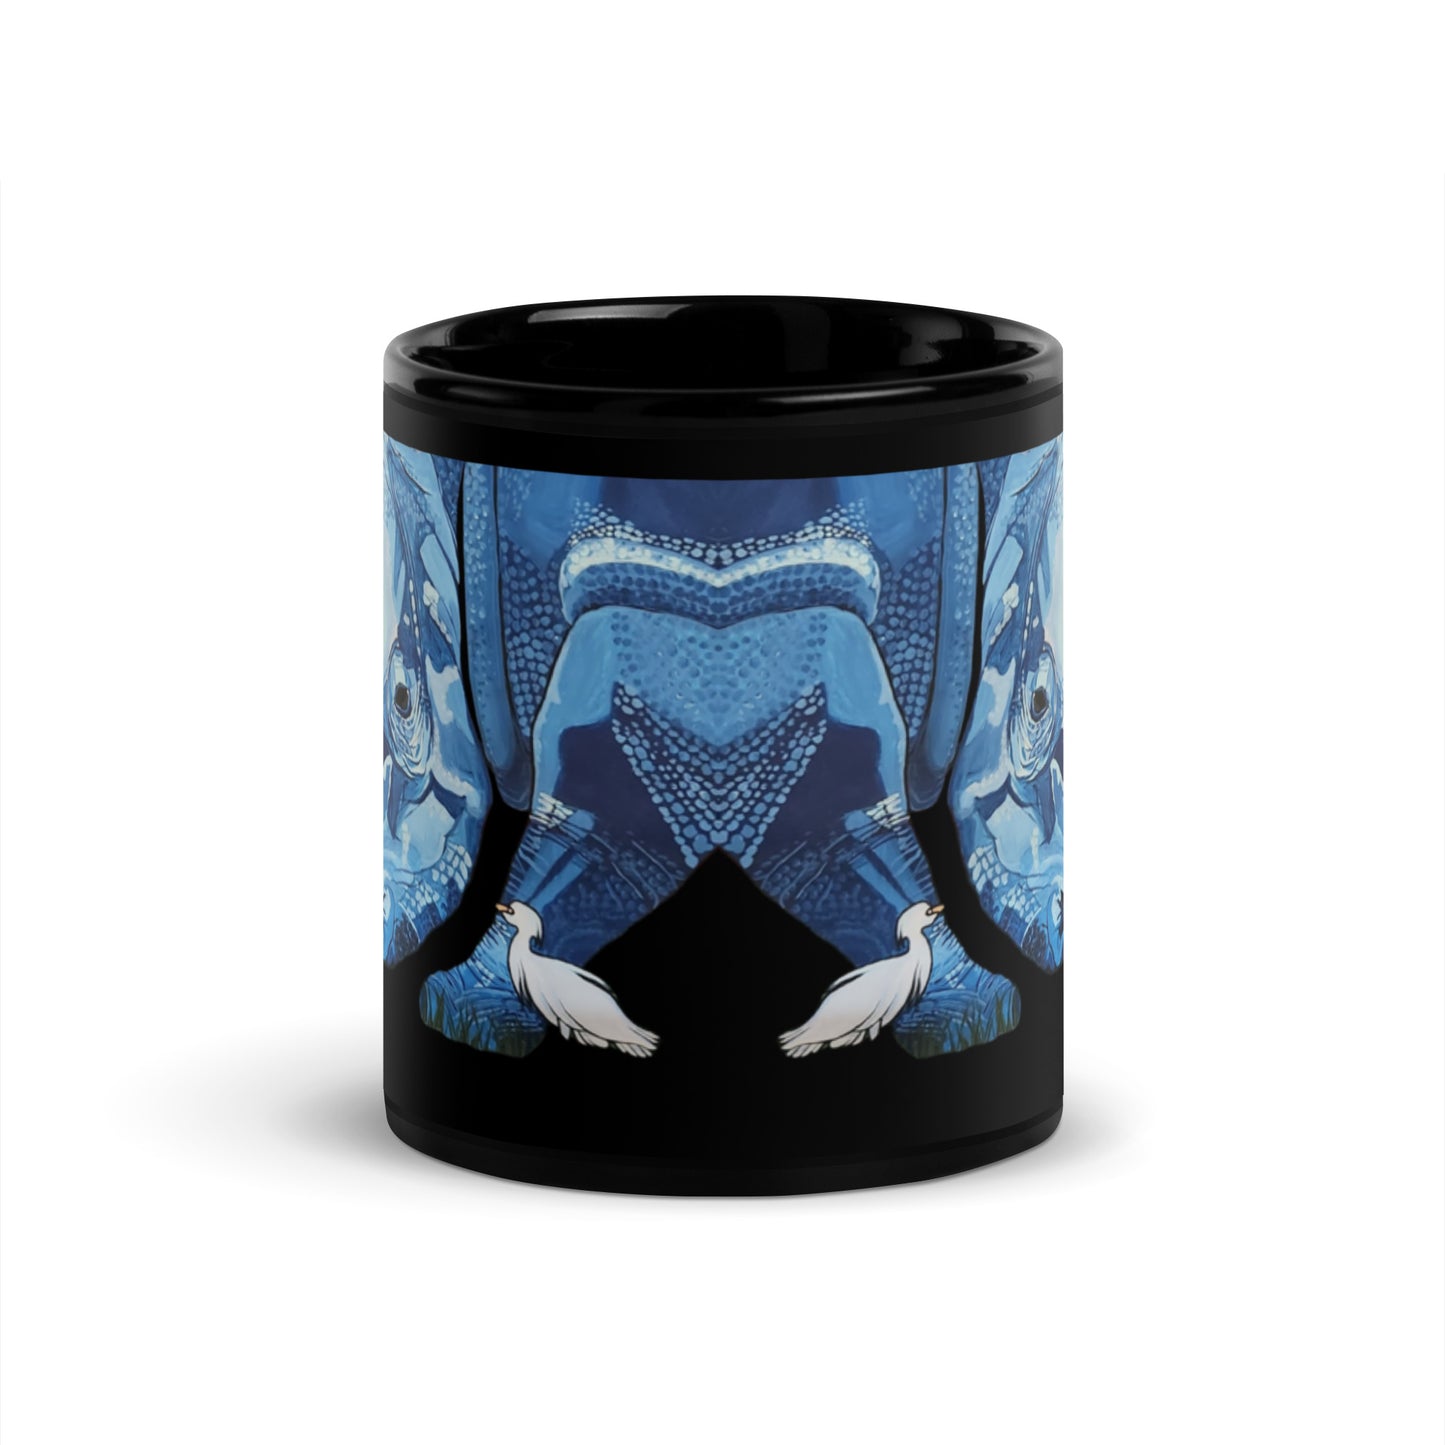 Blue Rhinoceros Black Glossy Mug